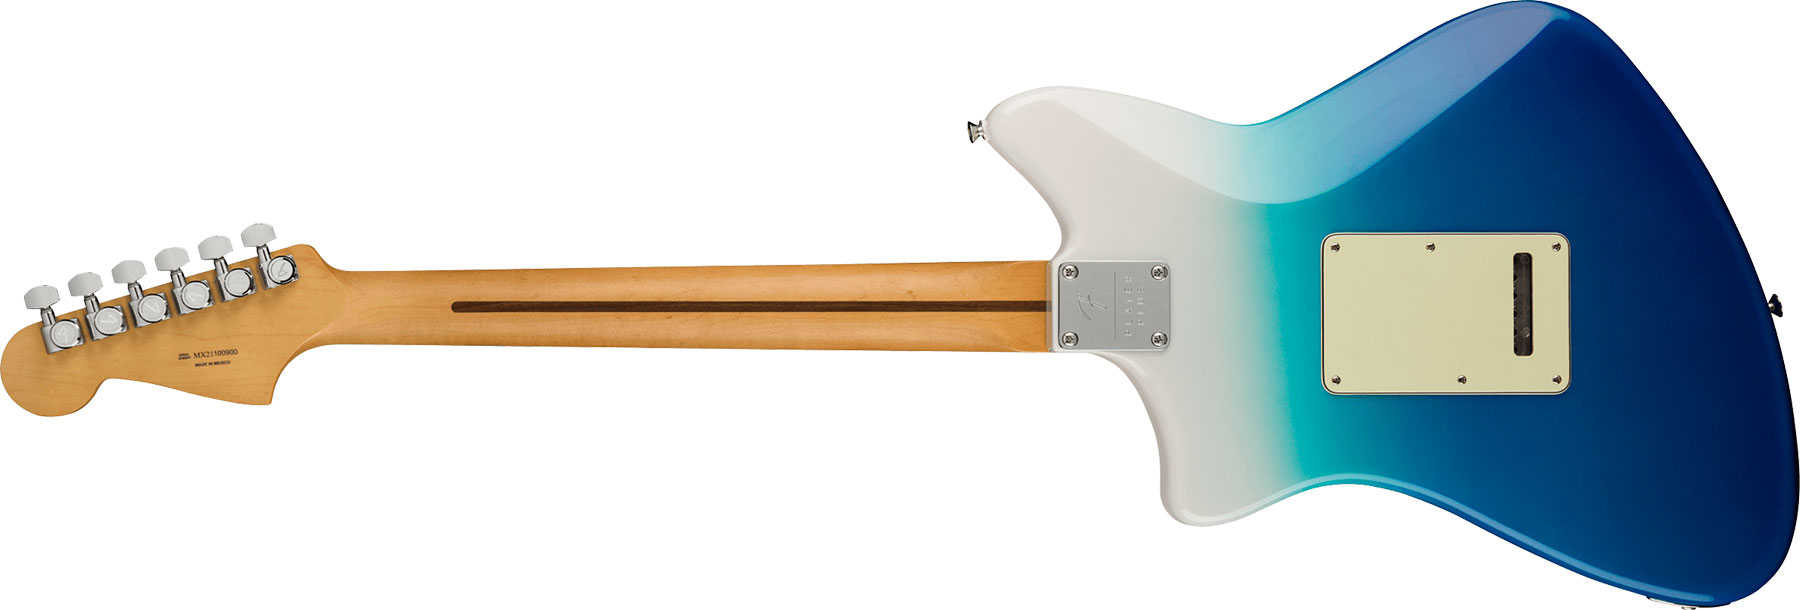 Fender Meteora Player Plus Hh Mex 2h Ht Pf - Belair Blue - Retro-rock elektrische gitaar - Variation 1